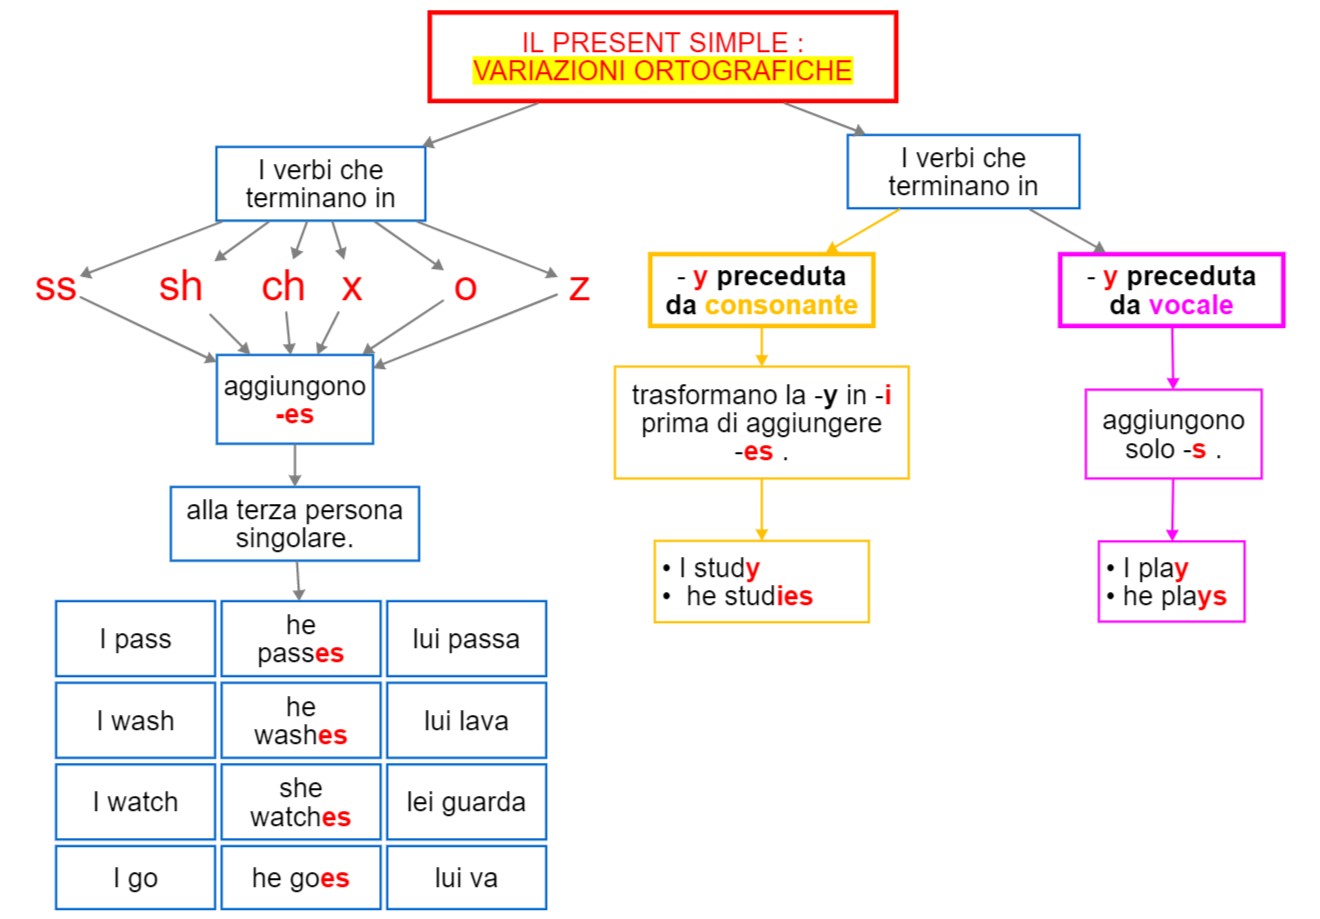 Verbo - present simple variazioni ortografiche